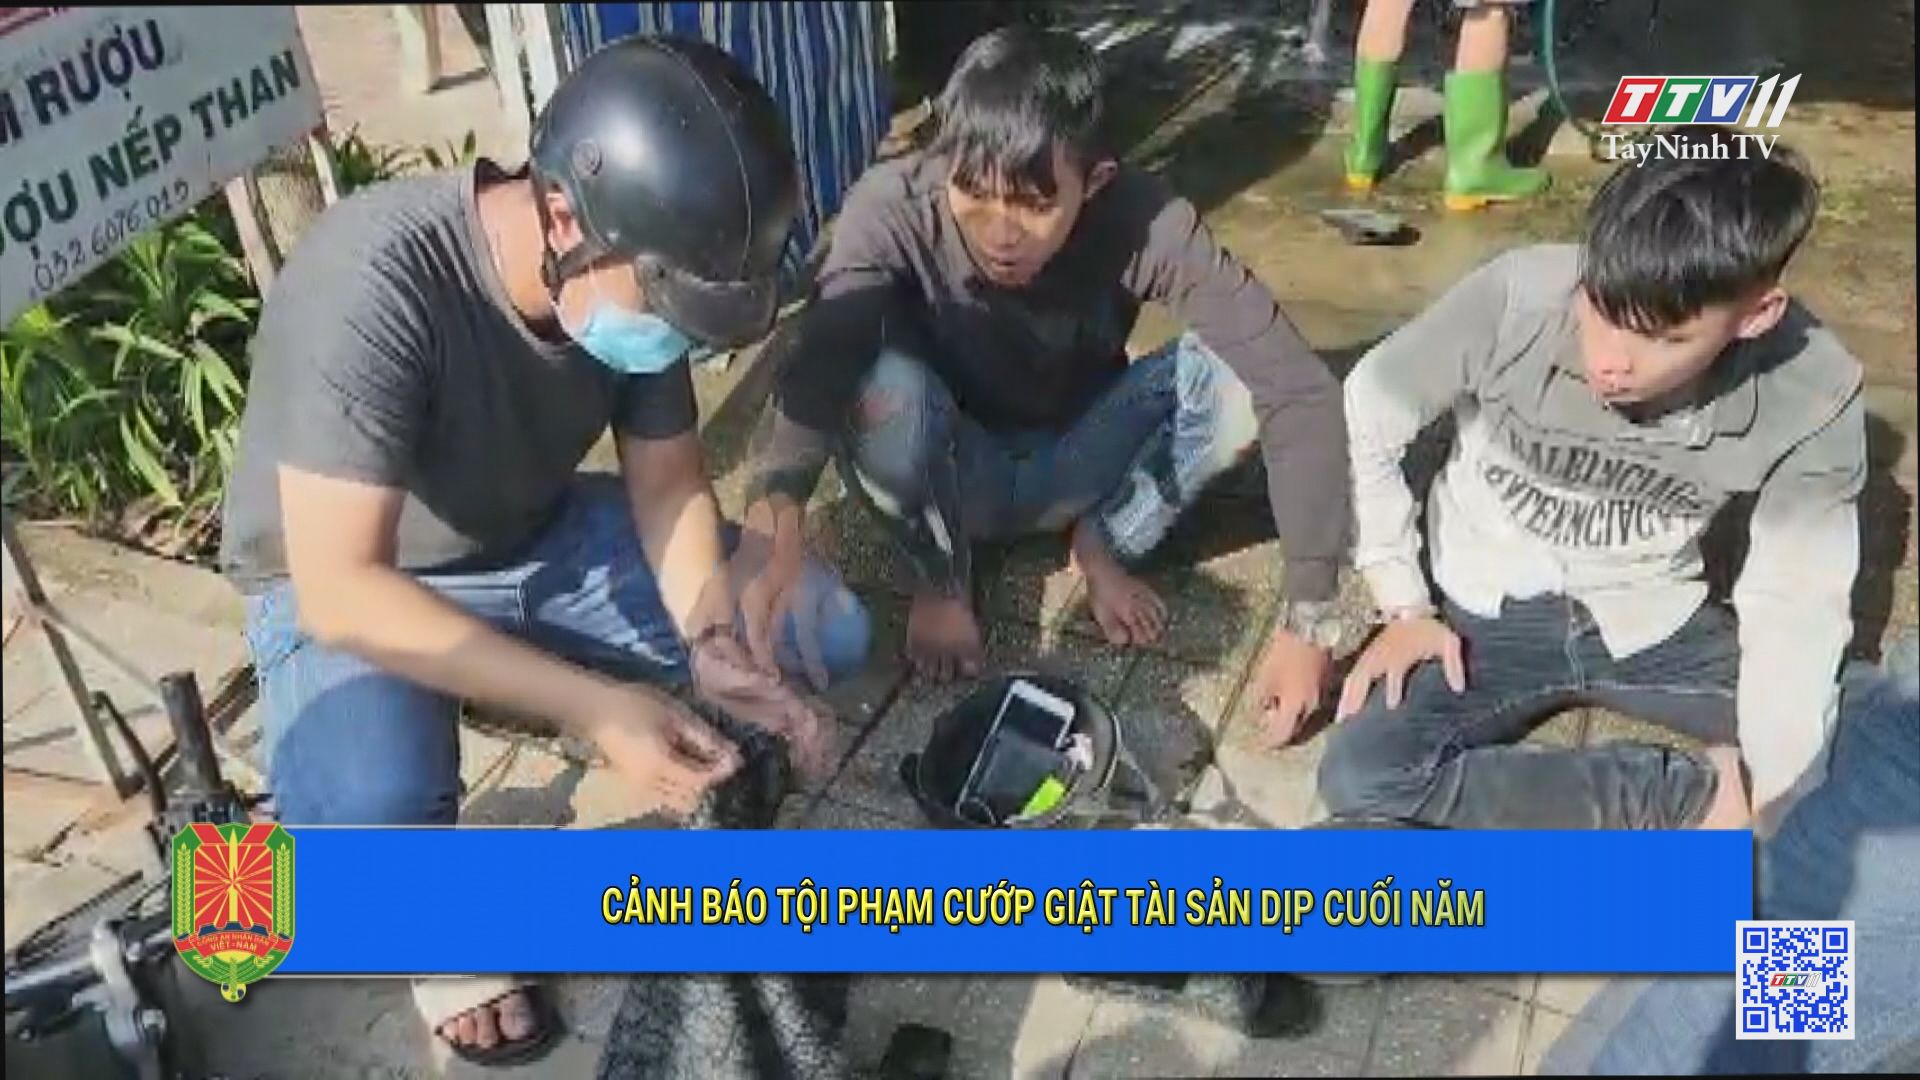 Cảnh báo tội phạm c.ướ.p g.iậ.t tài sản dịp cuối năm | An ninh Tây Ninh | TayNinhTV